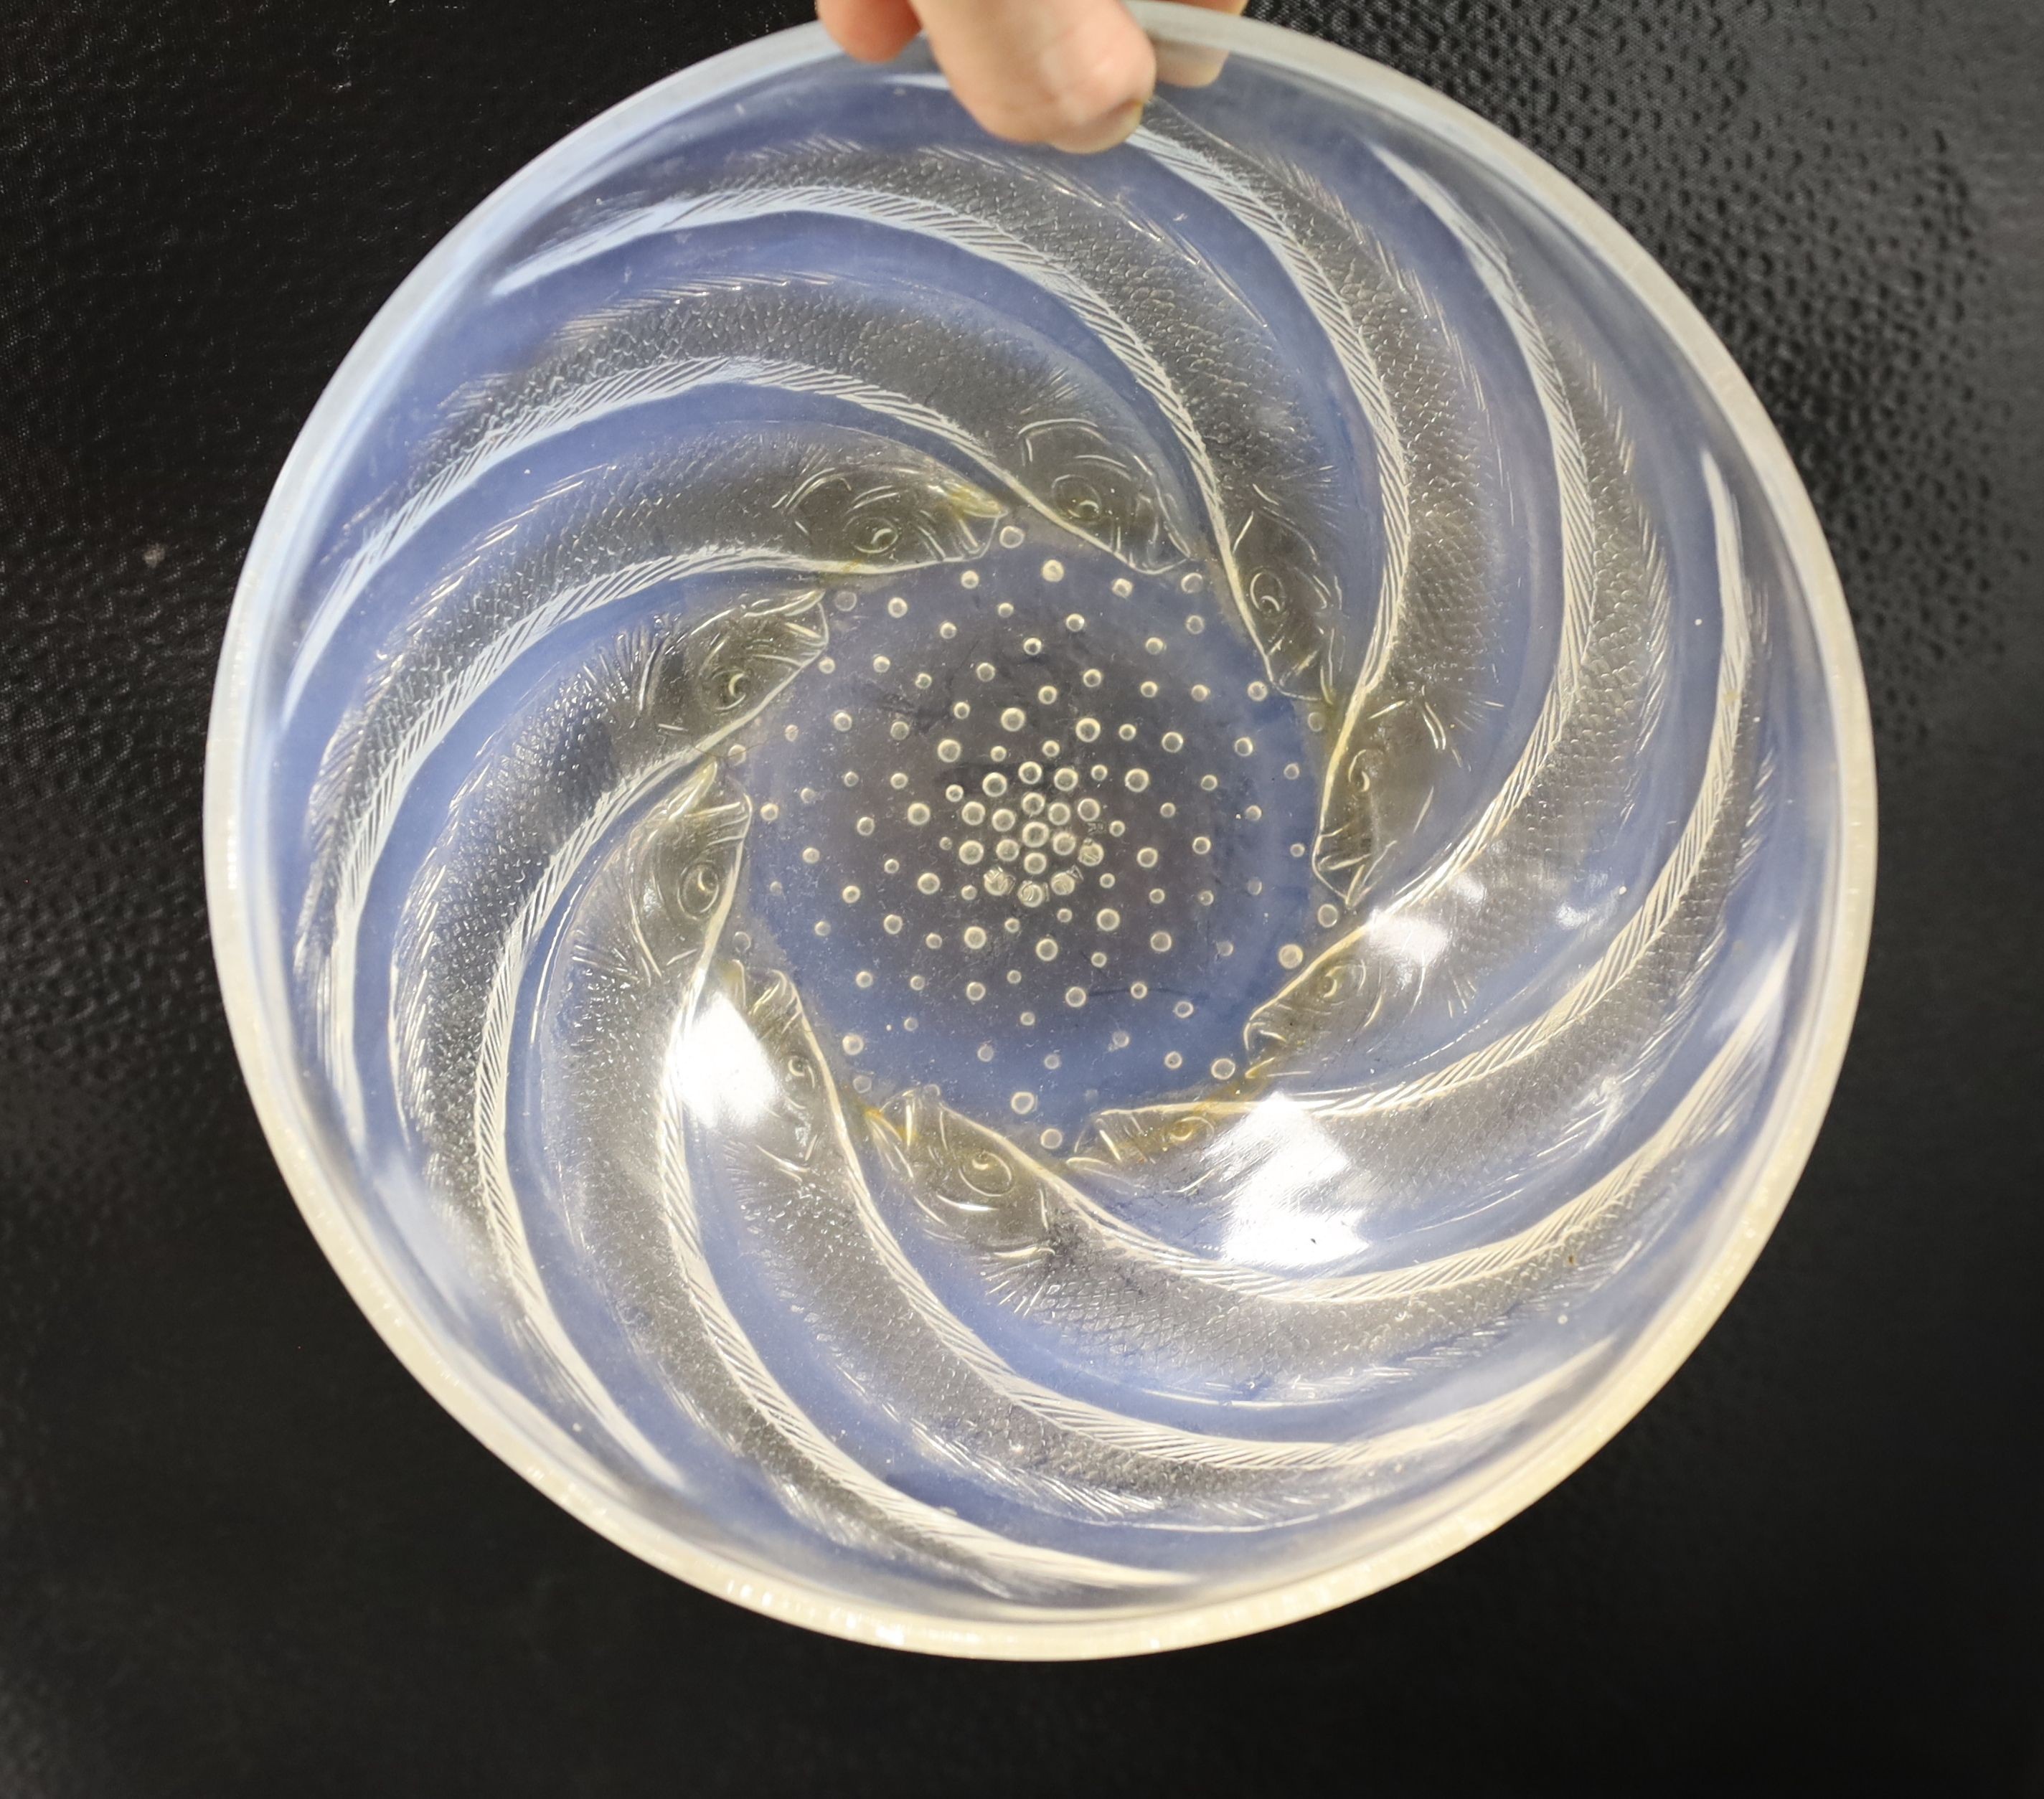 A R. Lalique ‘Poissons' bowl, no.3212, 21 cms diameter.